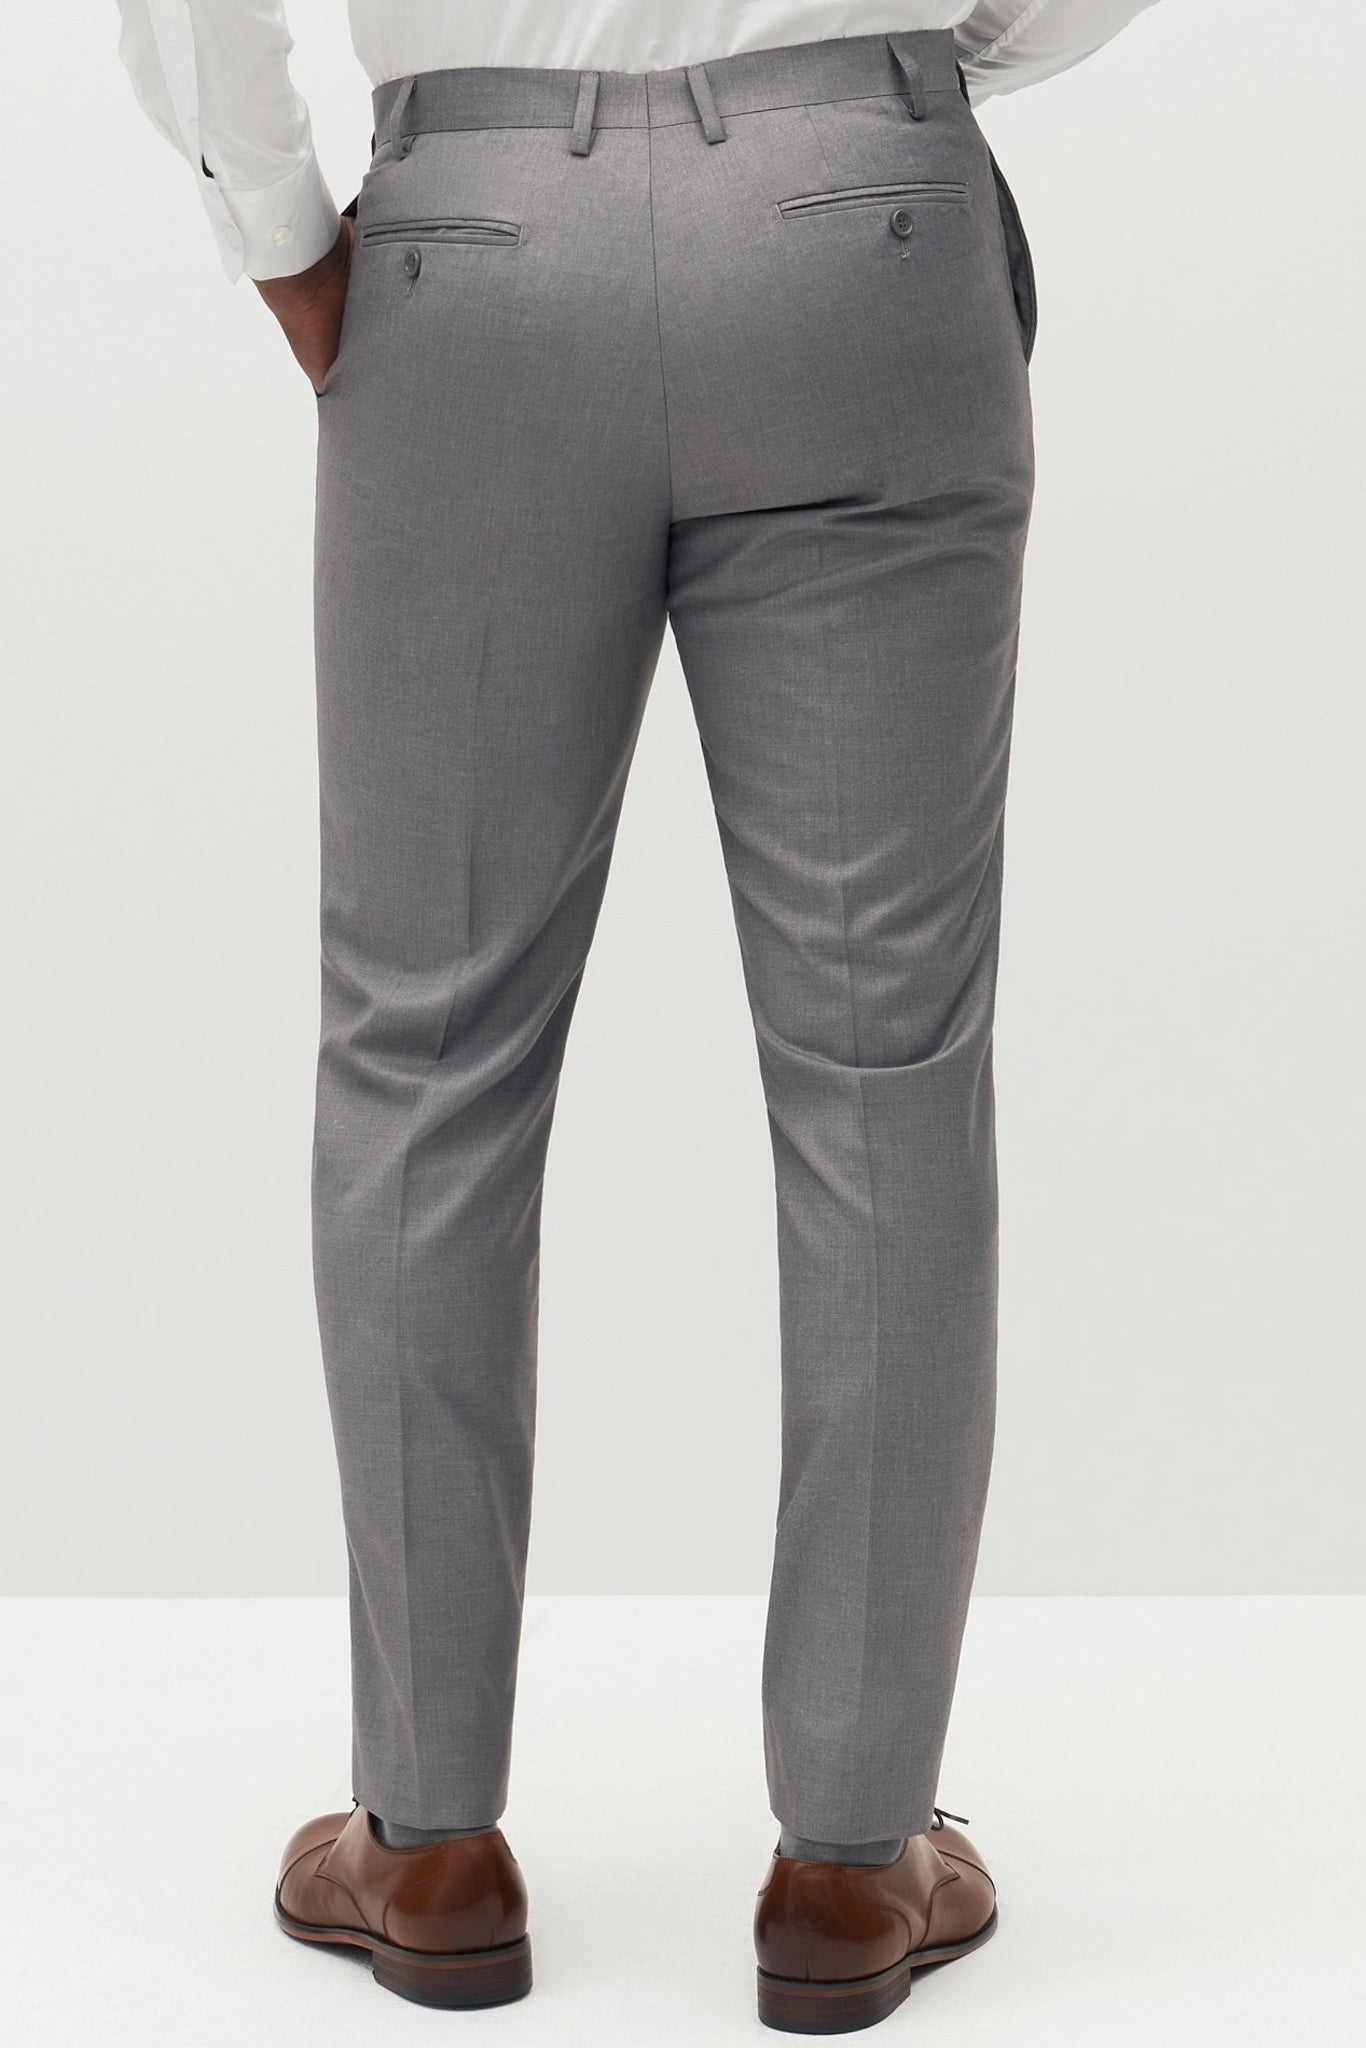 Lansdown - Light Grey - Modern Fit Suit Pants | Suit Pants | Politix